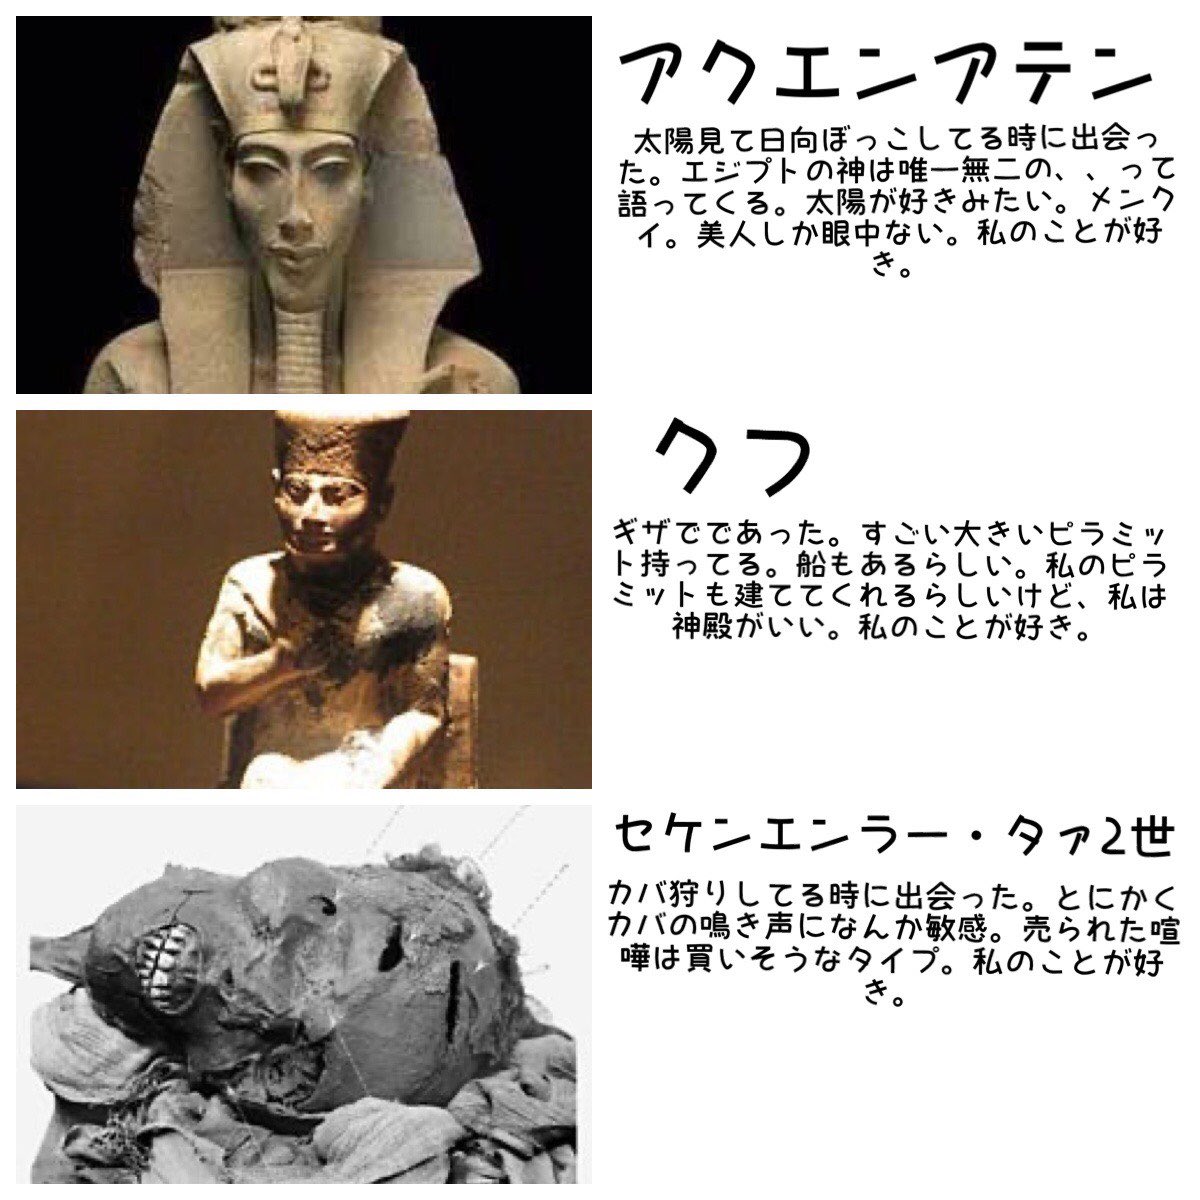 何か 相関図 が流行ってますが 県バージョン ハト 古代エジプト王 石膏像などカオスな様相を呈してきたので集めました Togetter